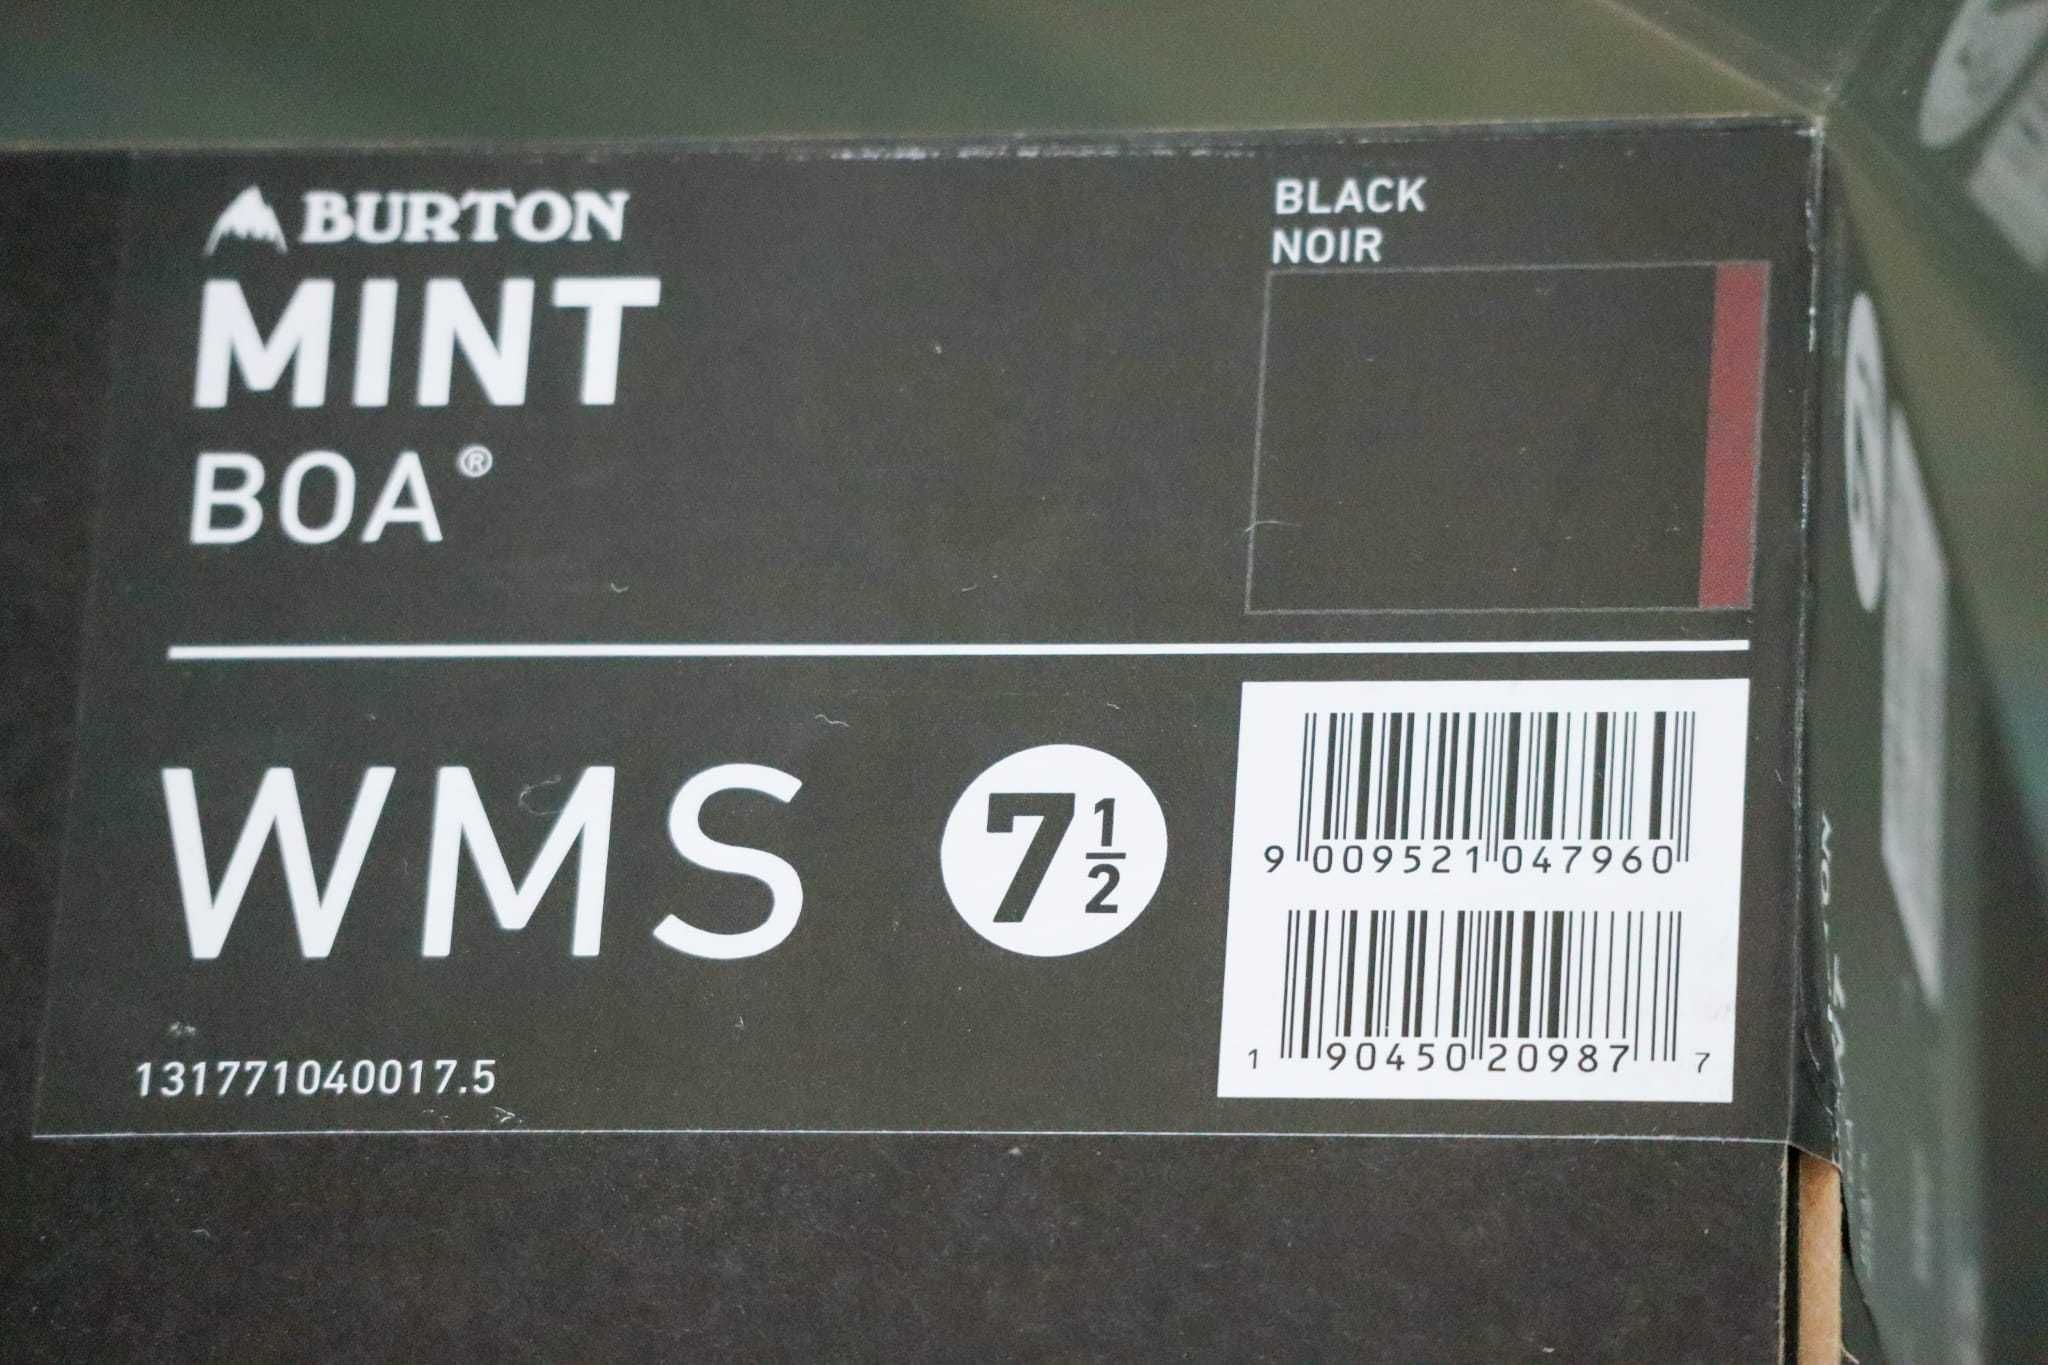 Vand Boots Burton Mint, marimea EU 39, 24,5 cm (4 purtari).